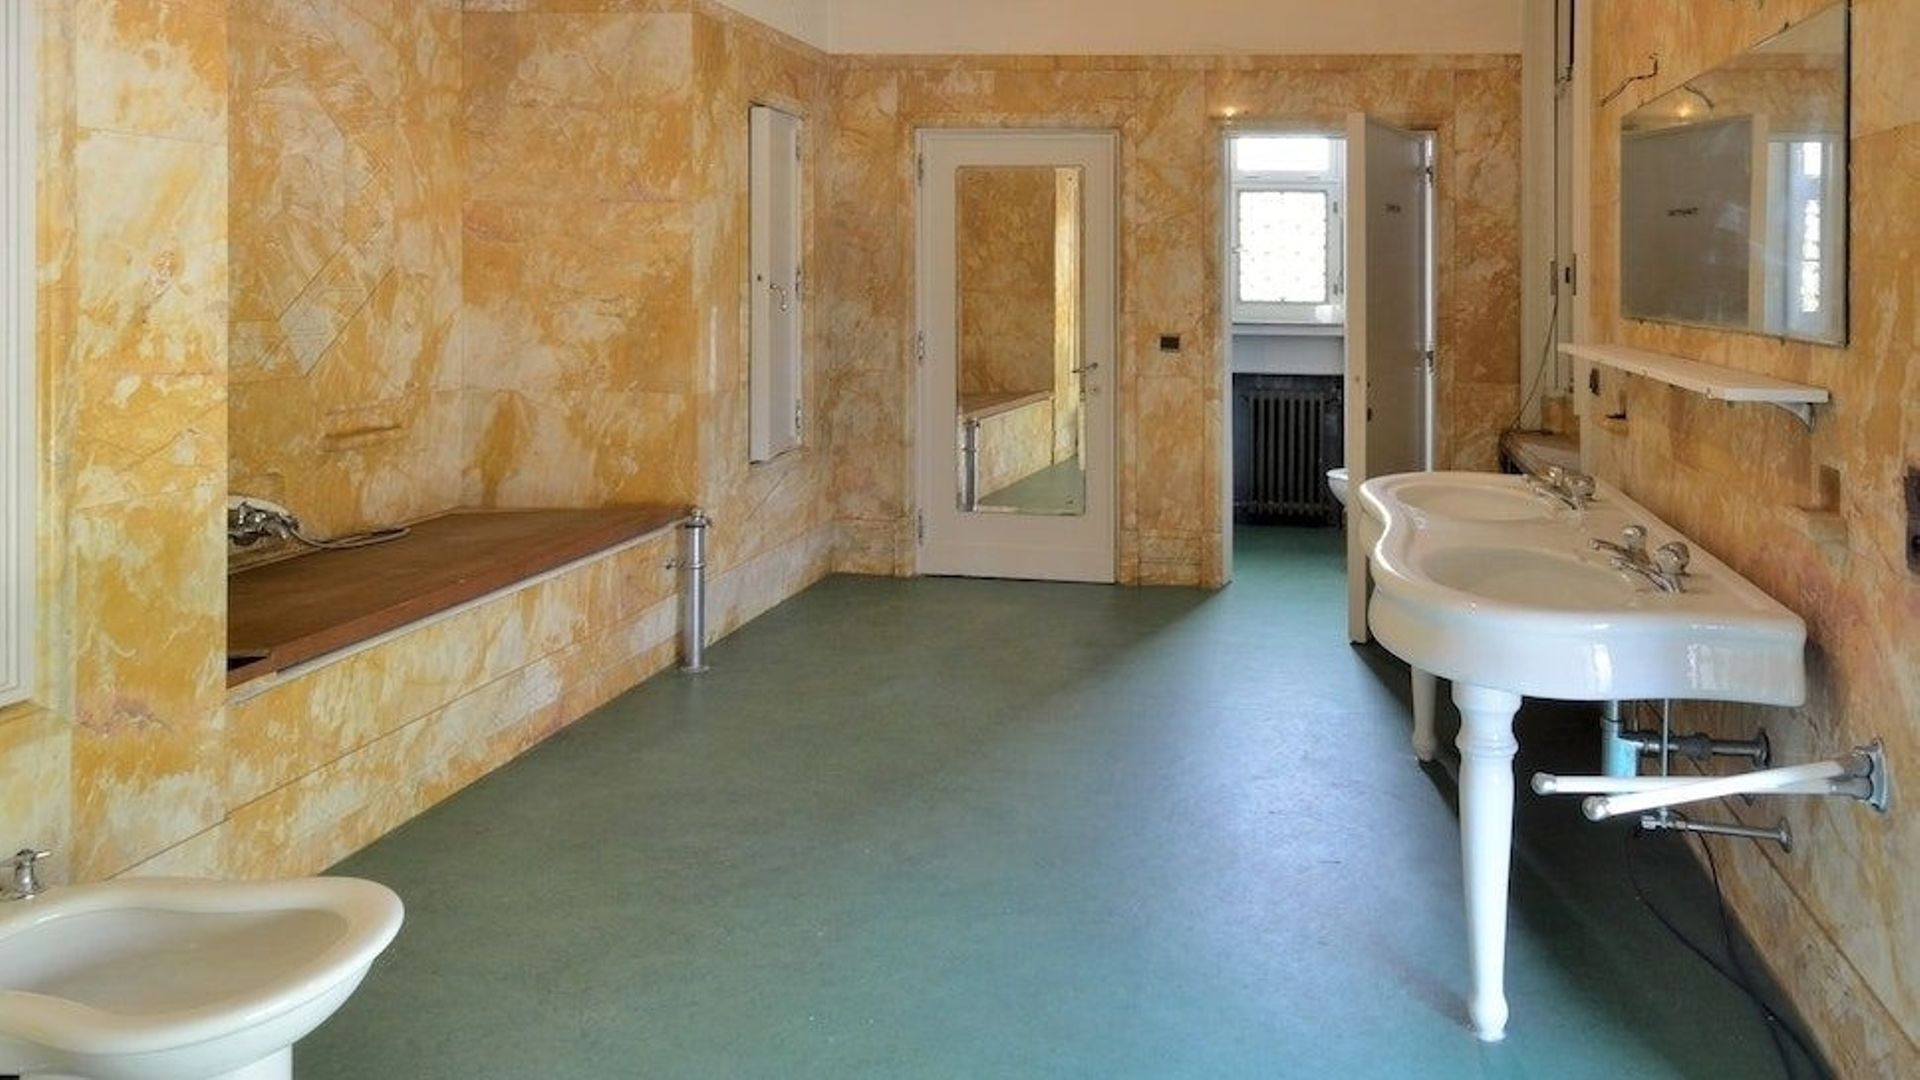 La salle de bain avec ses sanitaires d’époque.